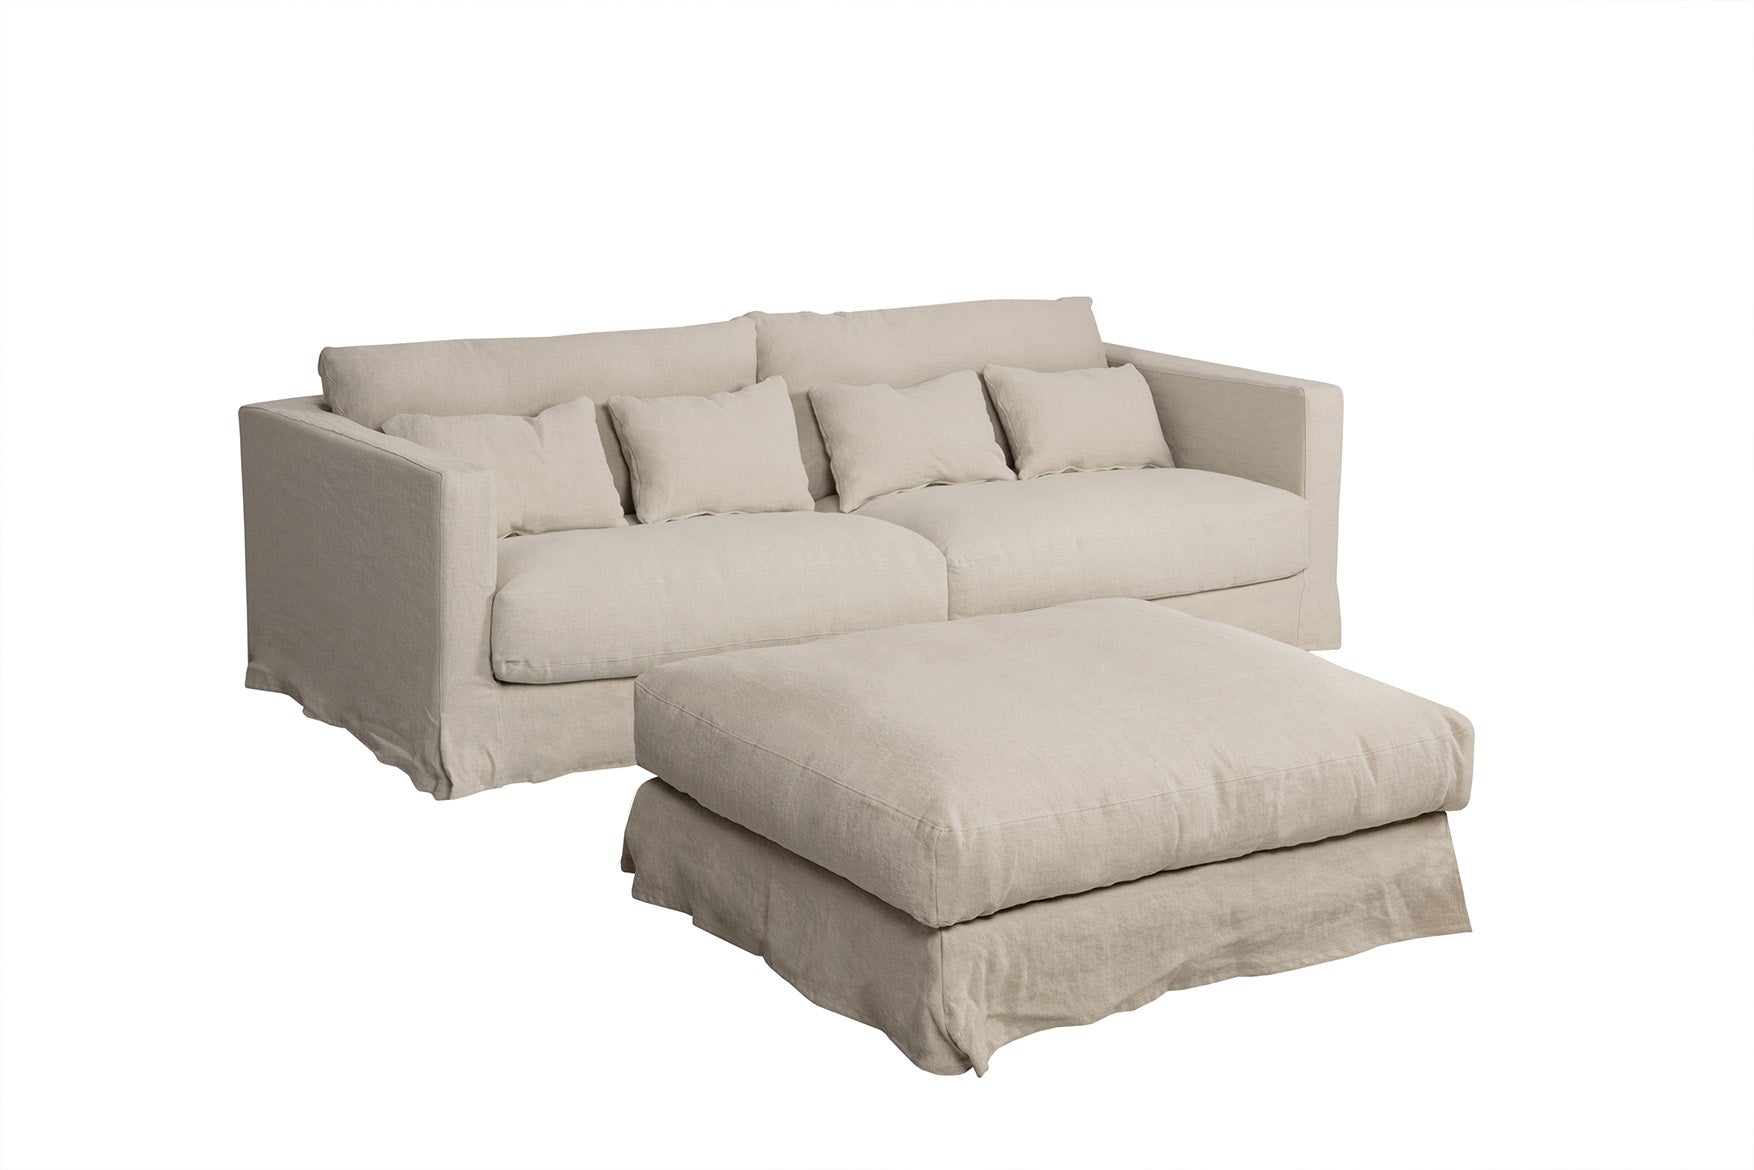 Mastrella Ilario 3 Seater Sofa